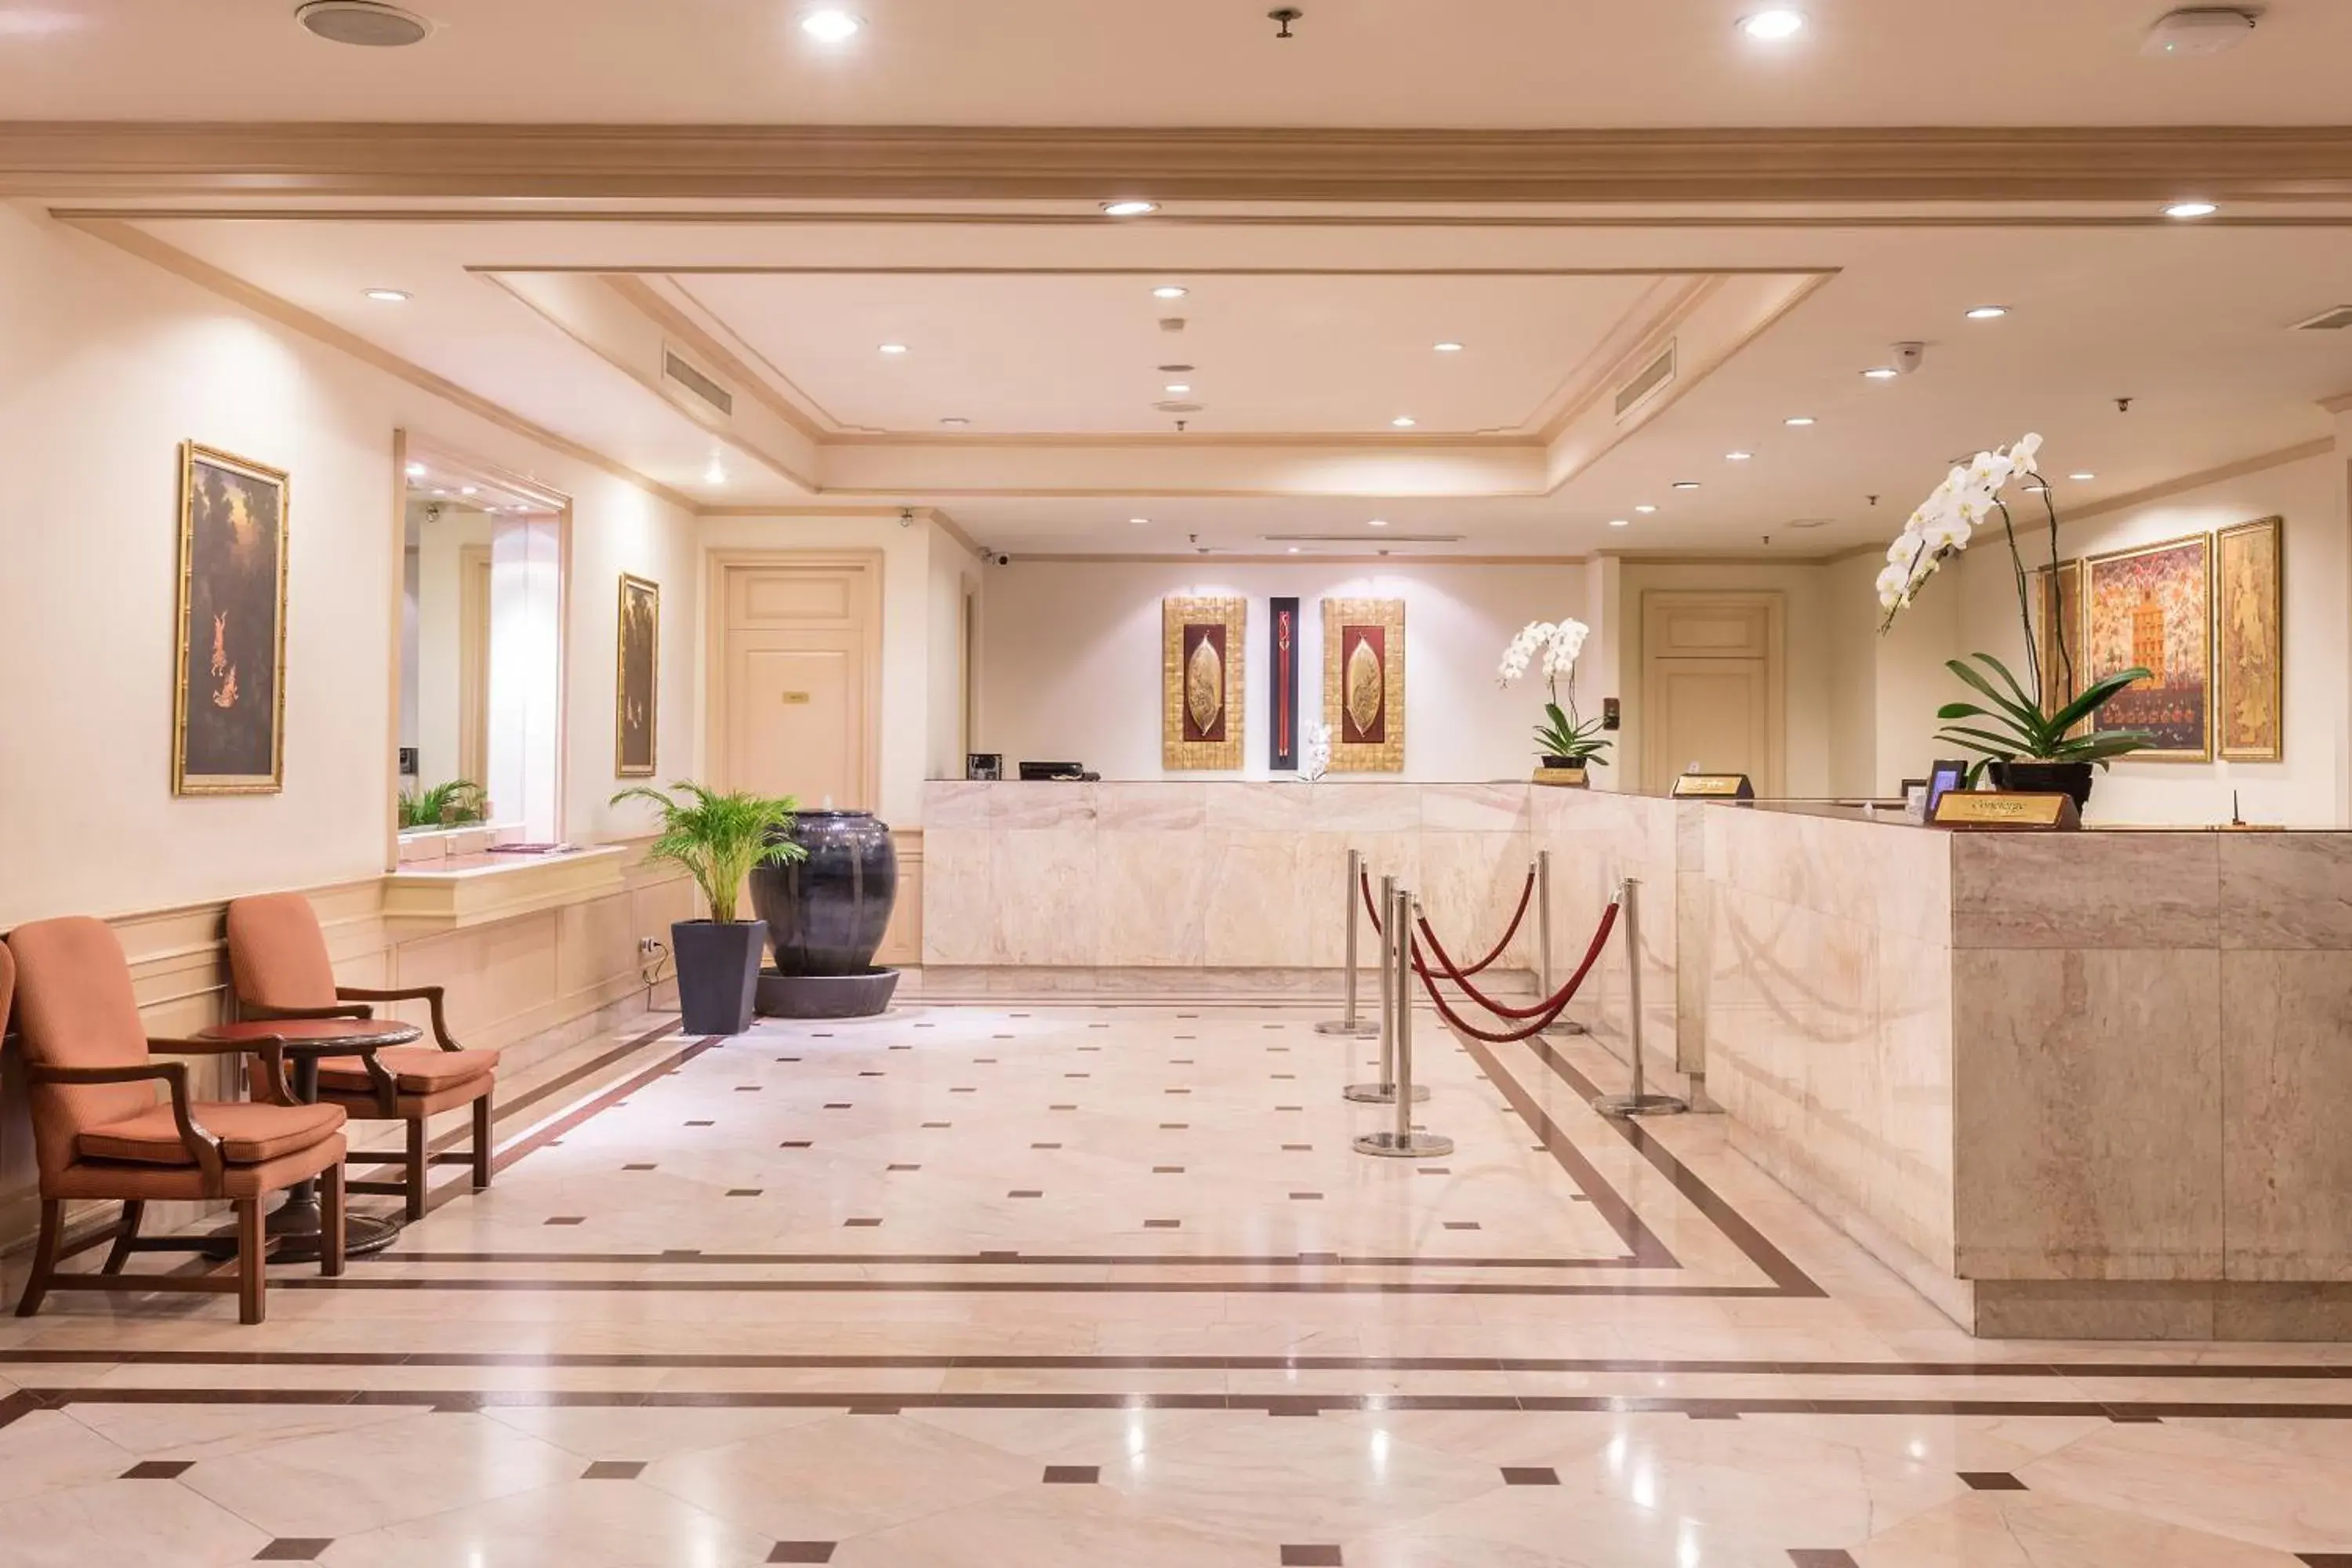 Lobby or reception, Lobby/Reception in Ramada by Wyndham D MA Bangkok